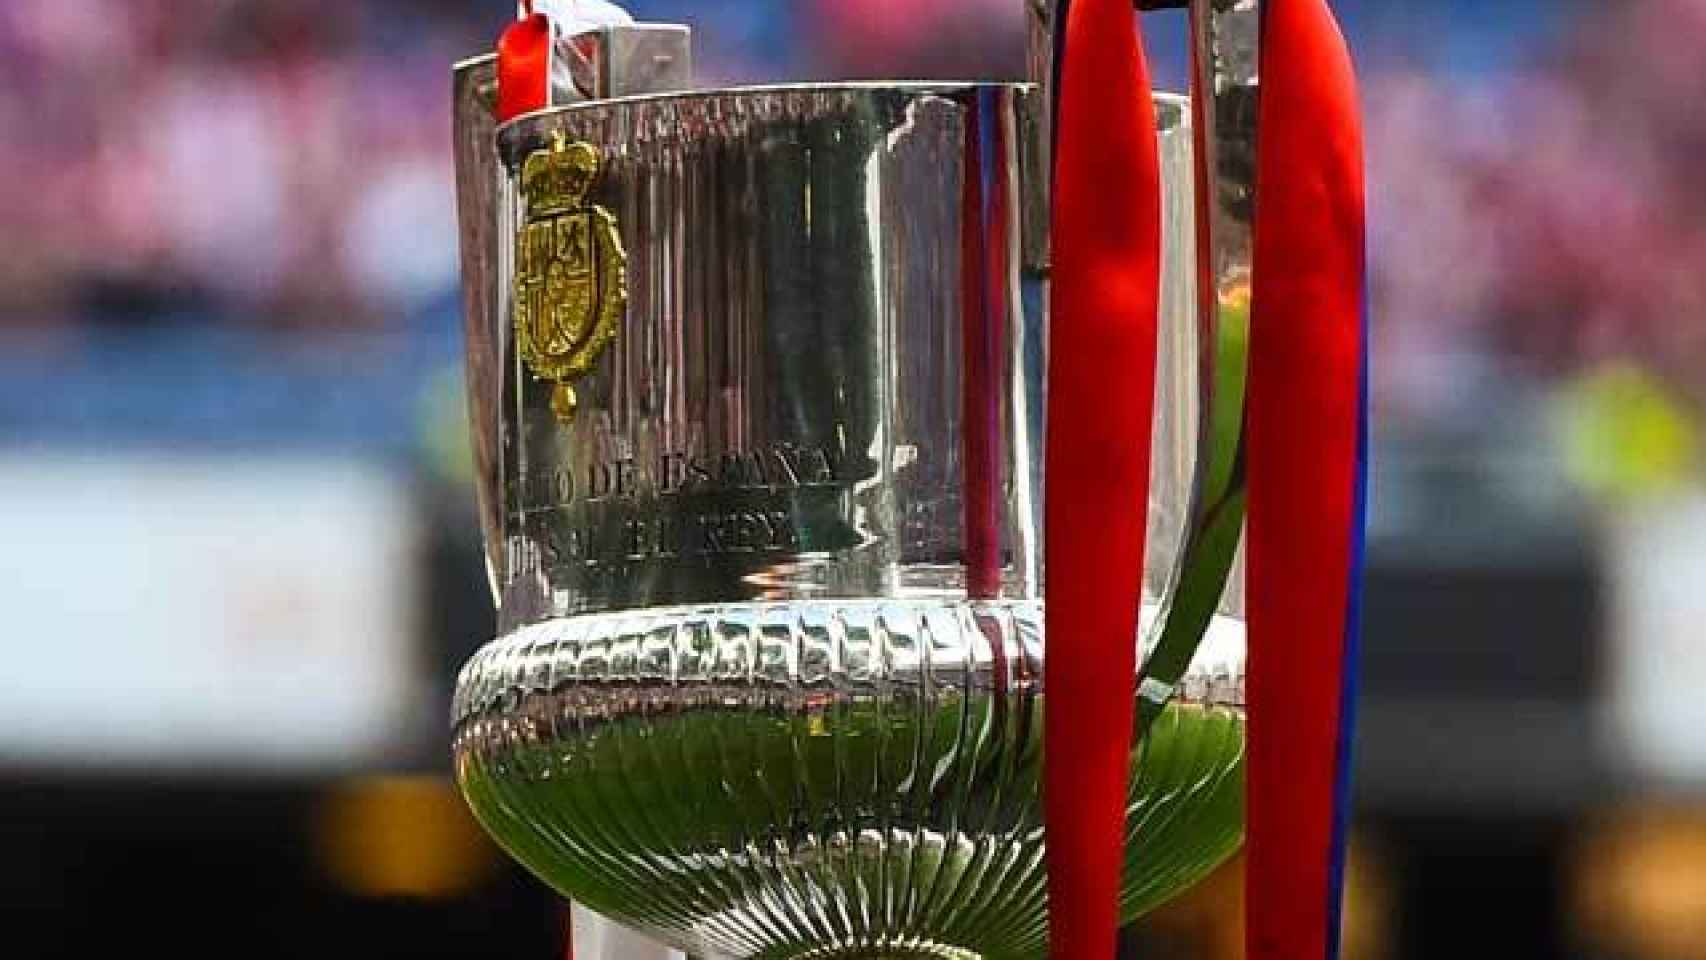 Copa del Rey.